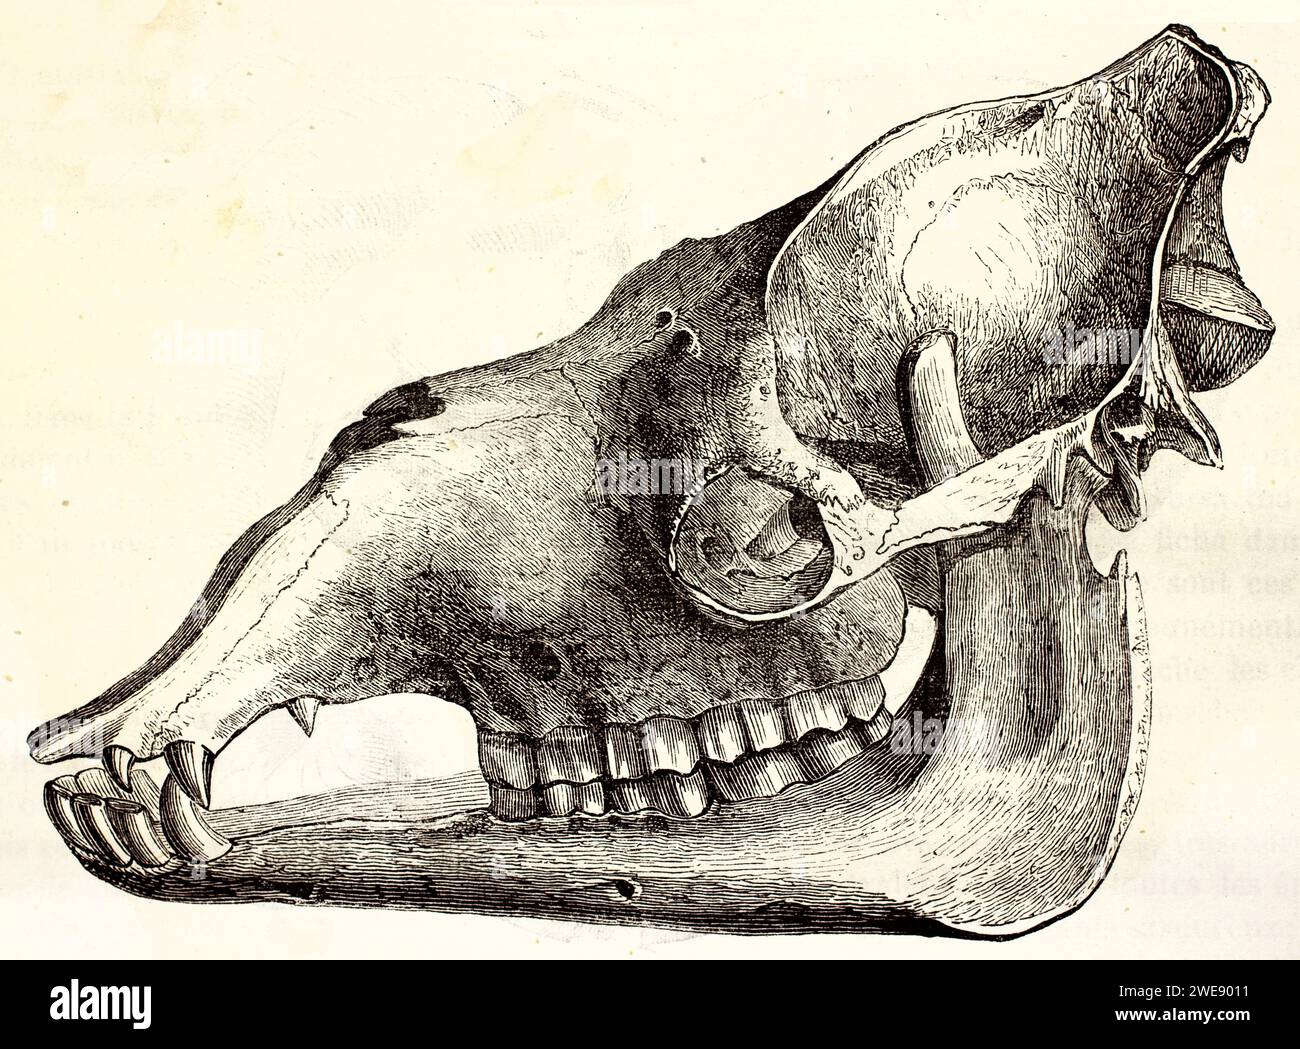 Vecchia illustrazione incisa del cranio di barbet (vista laterale). Di autore sconosciuto, pubblicato su Brehm, Les Mammifers, Baillière et fils, Parigi, 1878 Foto Stock